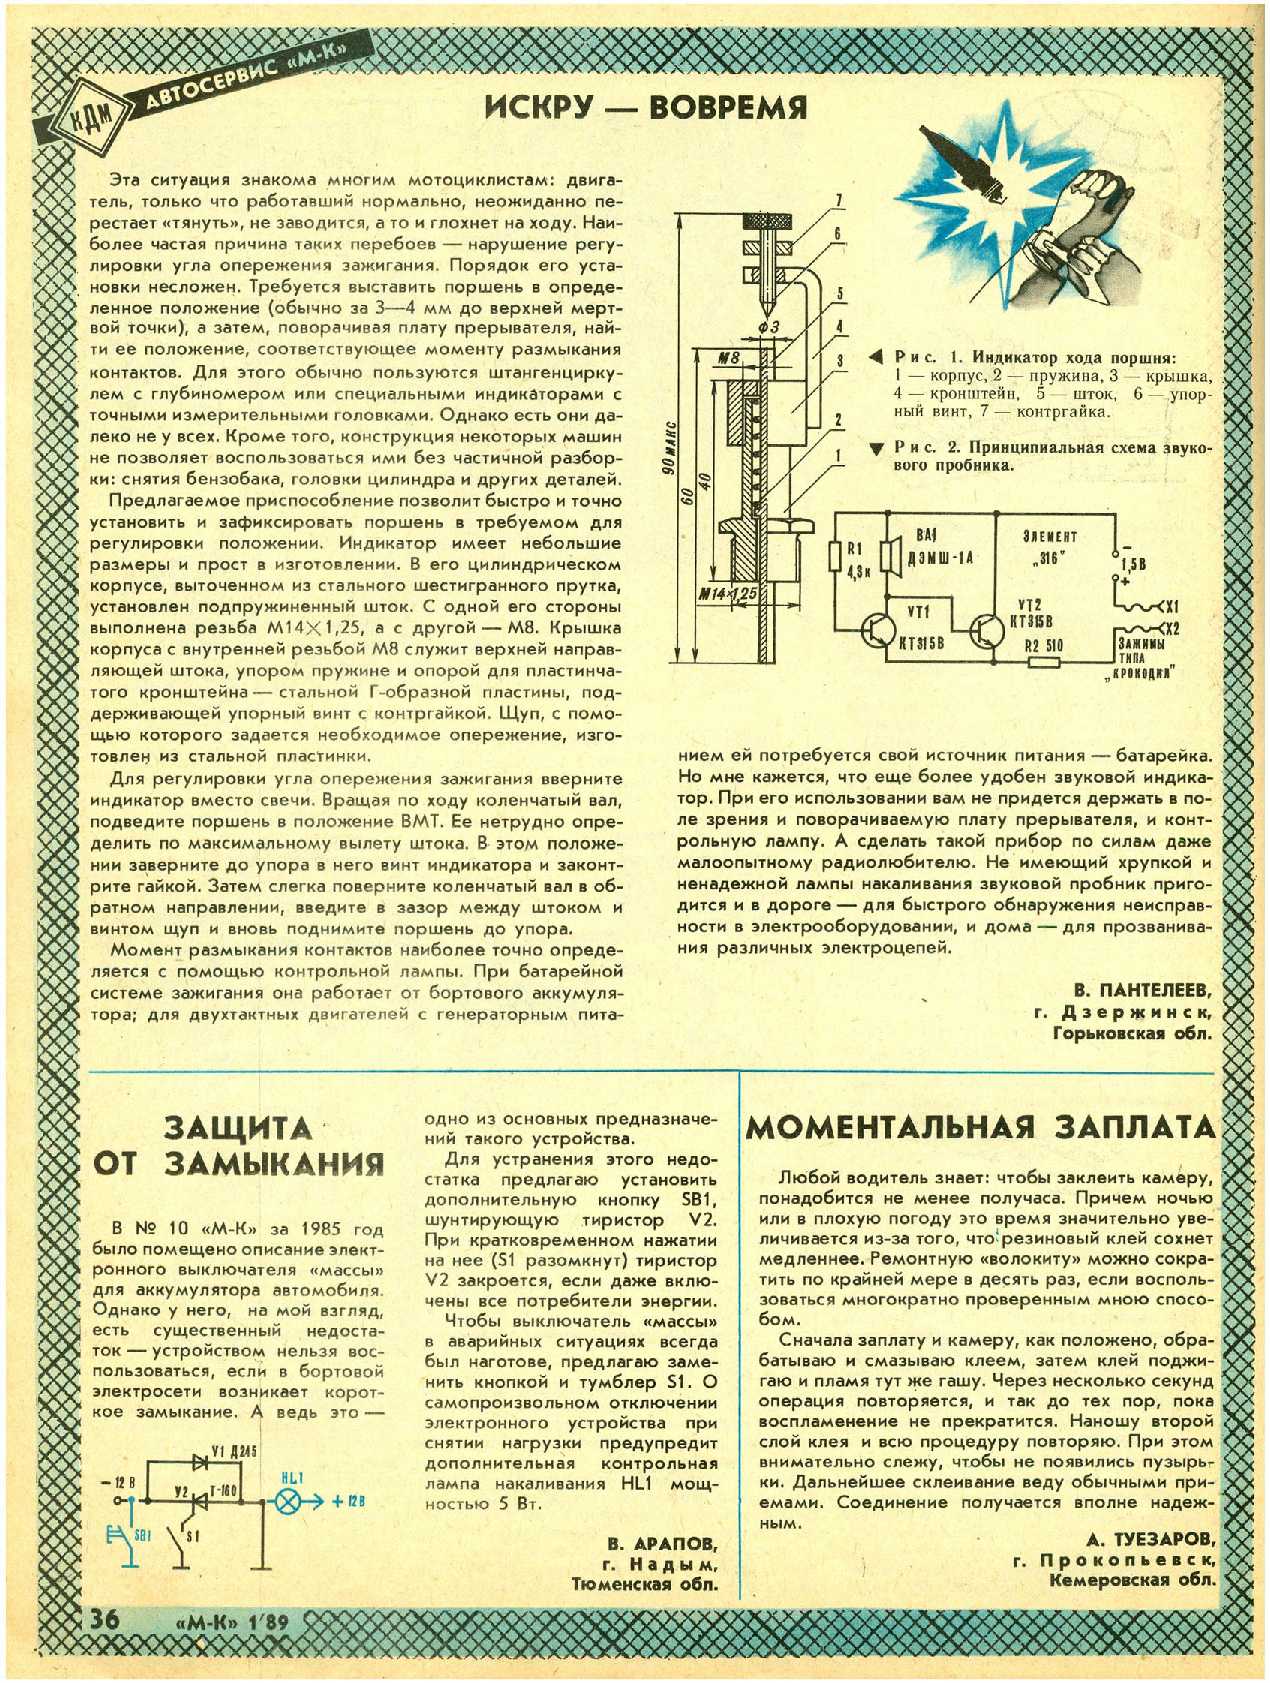 МК 1, 1989, 36 c.